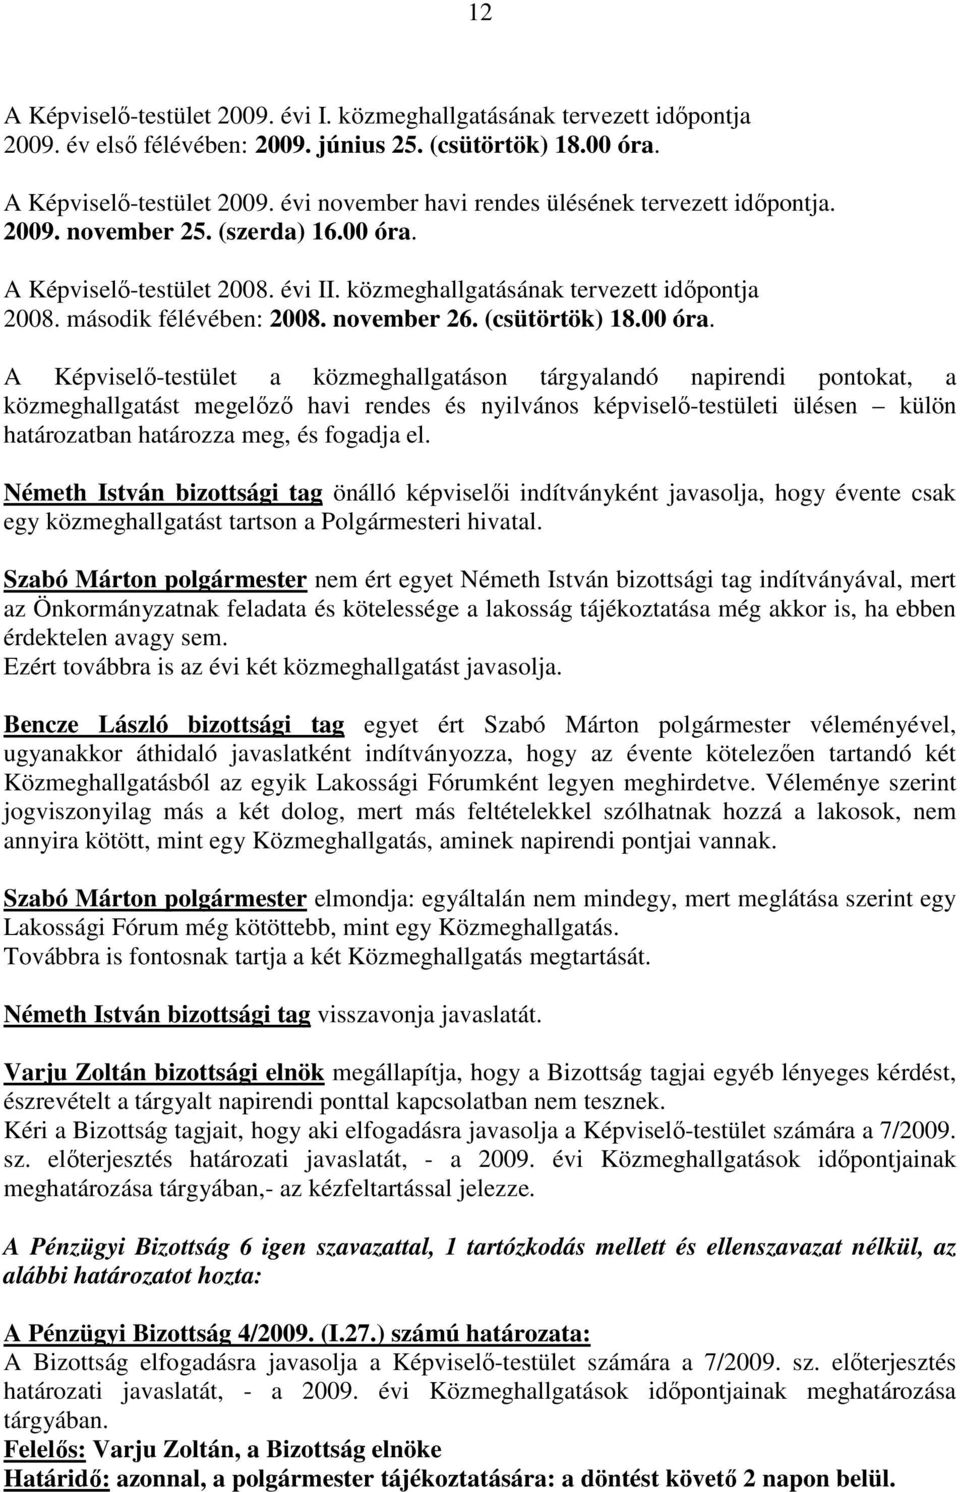 A Képviselı-testület 2008. évi II. közmeghallgatásának tervezett idıpontja 2008. második félévében: 2008. november 26. (csütörtök) 18.00 óra.